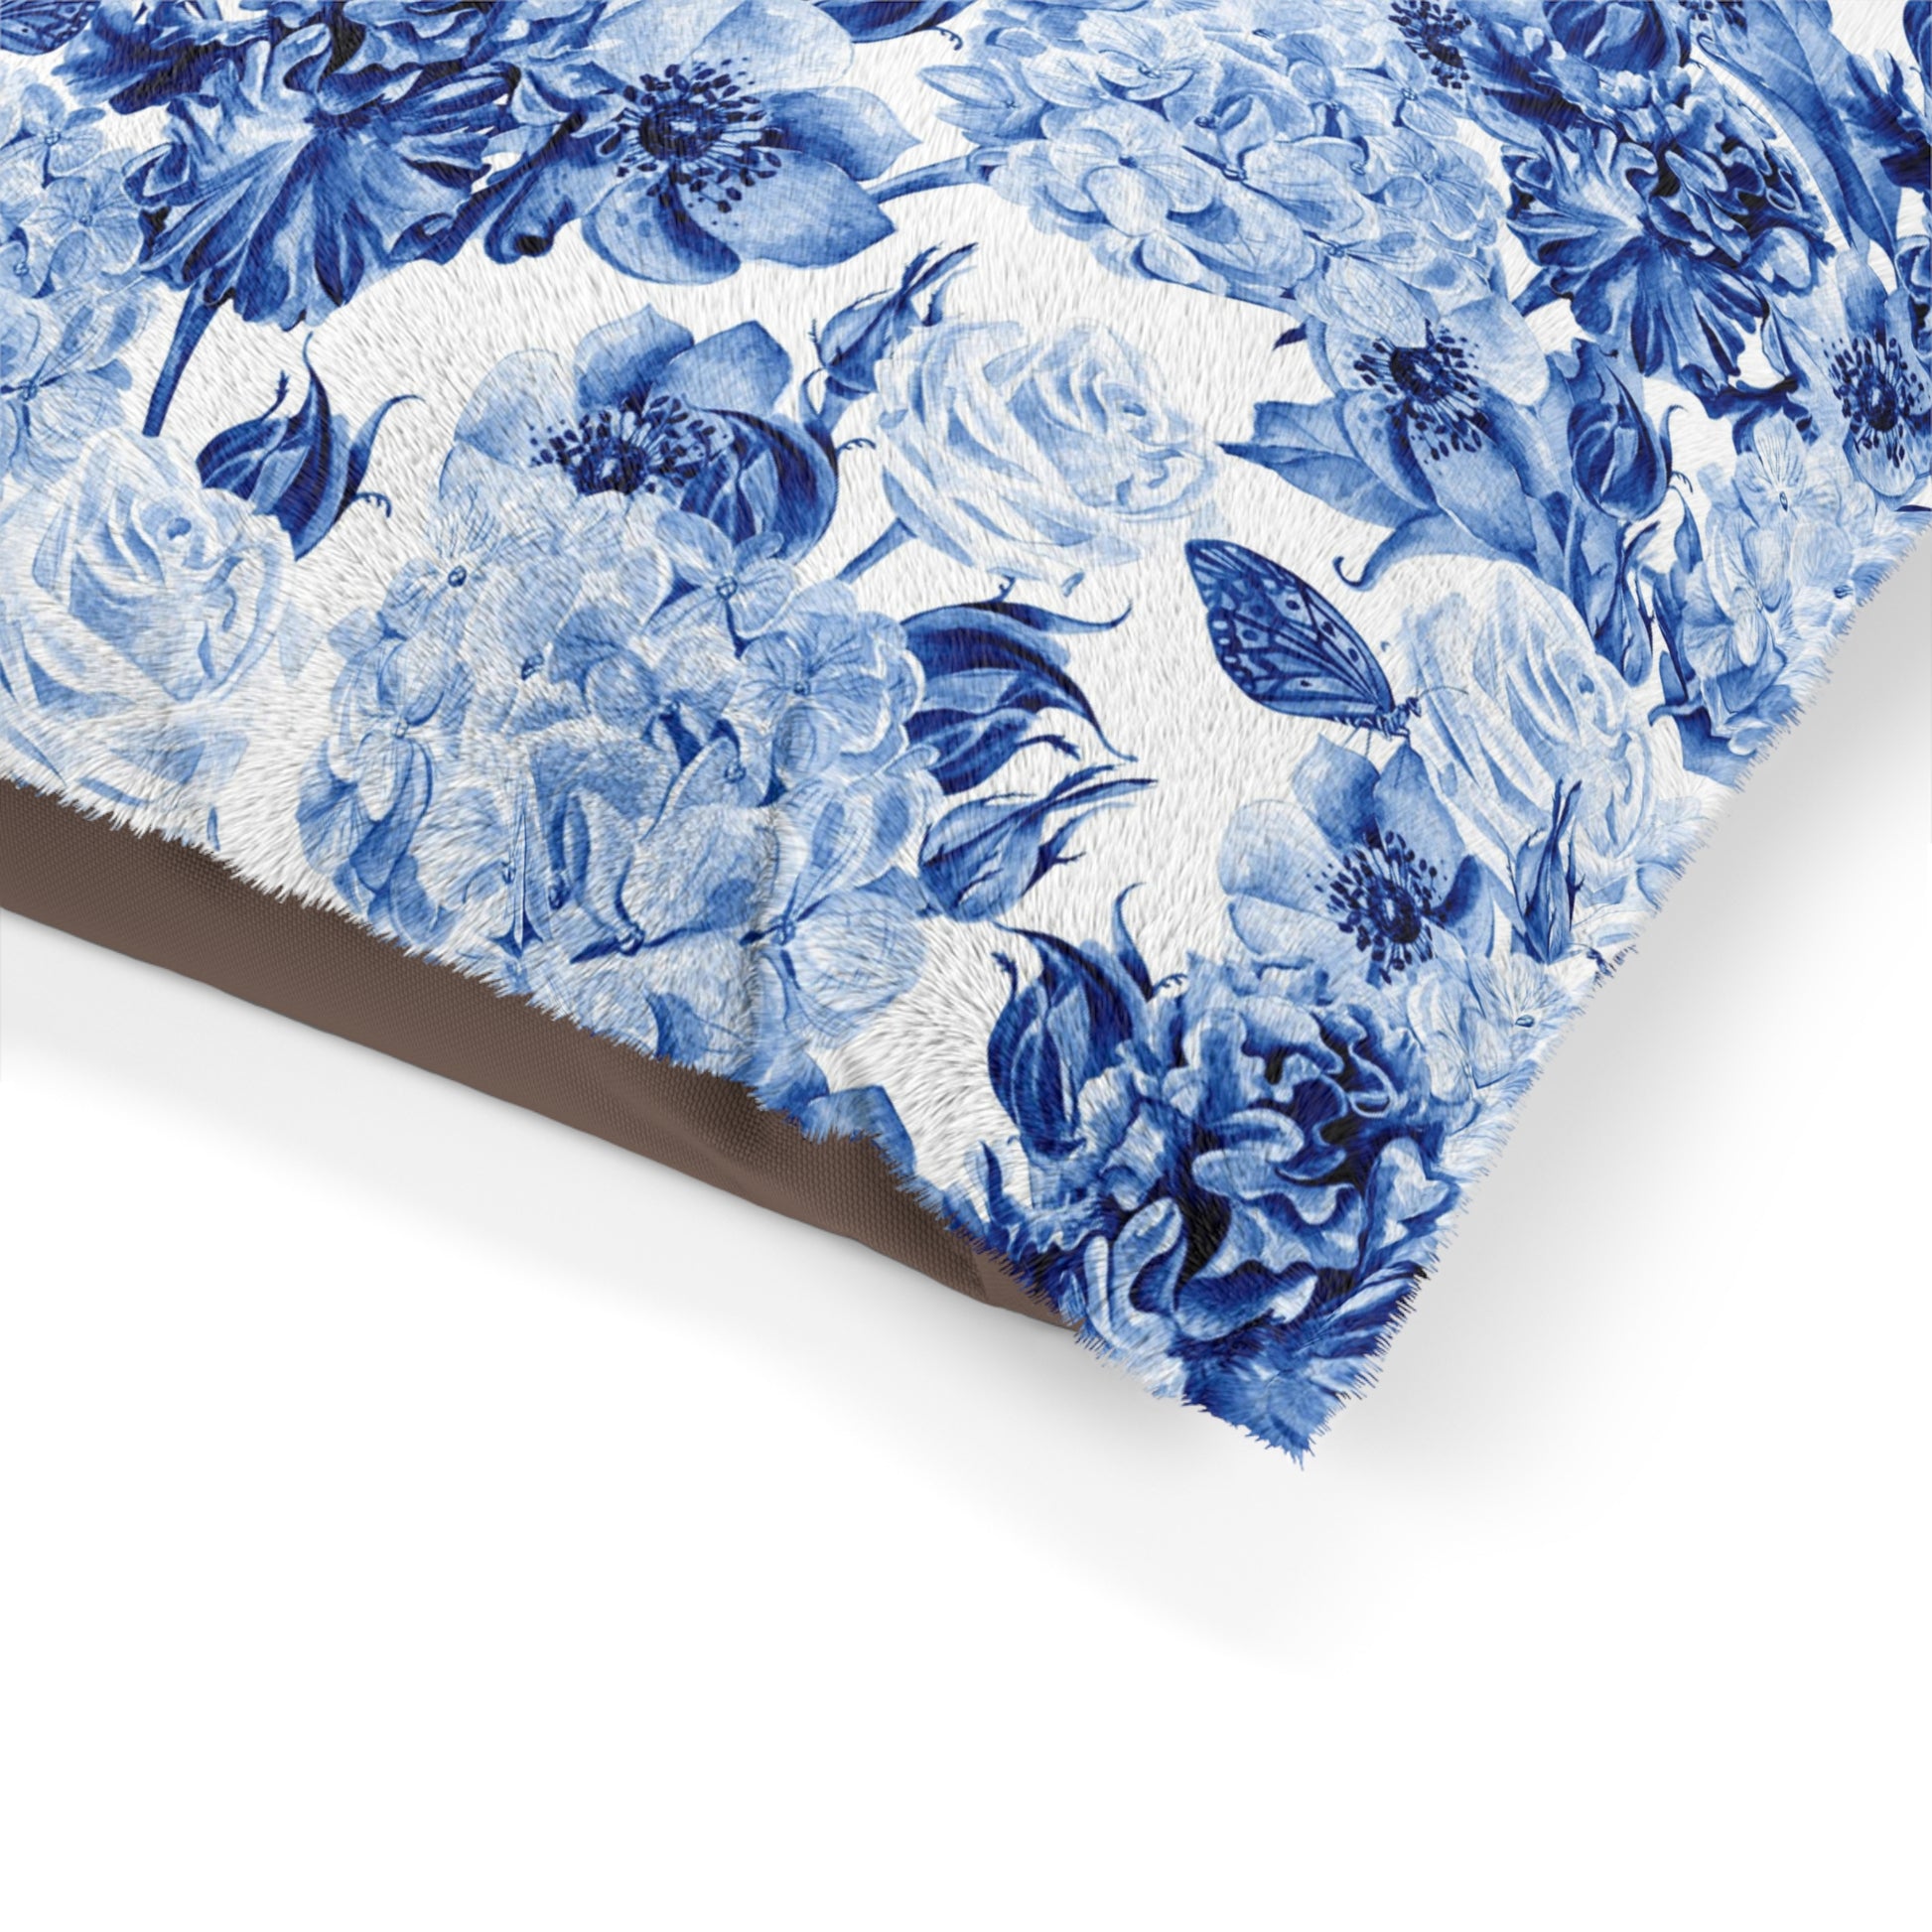 Pet Bed Cornflower Blue Flowers - Expressive DeZien 